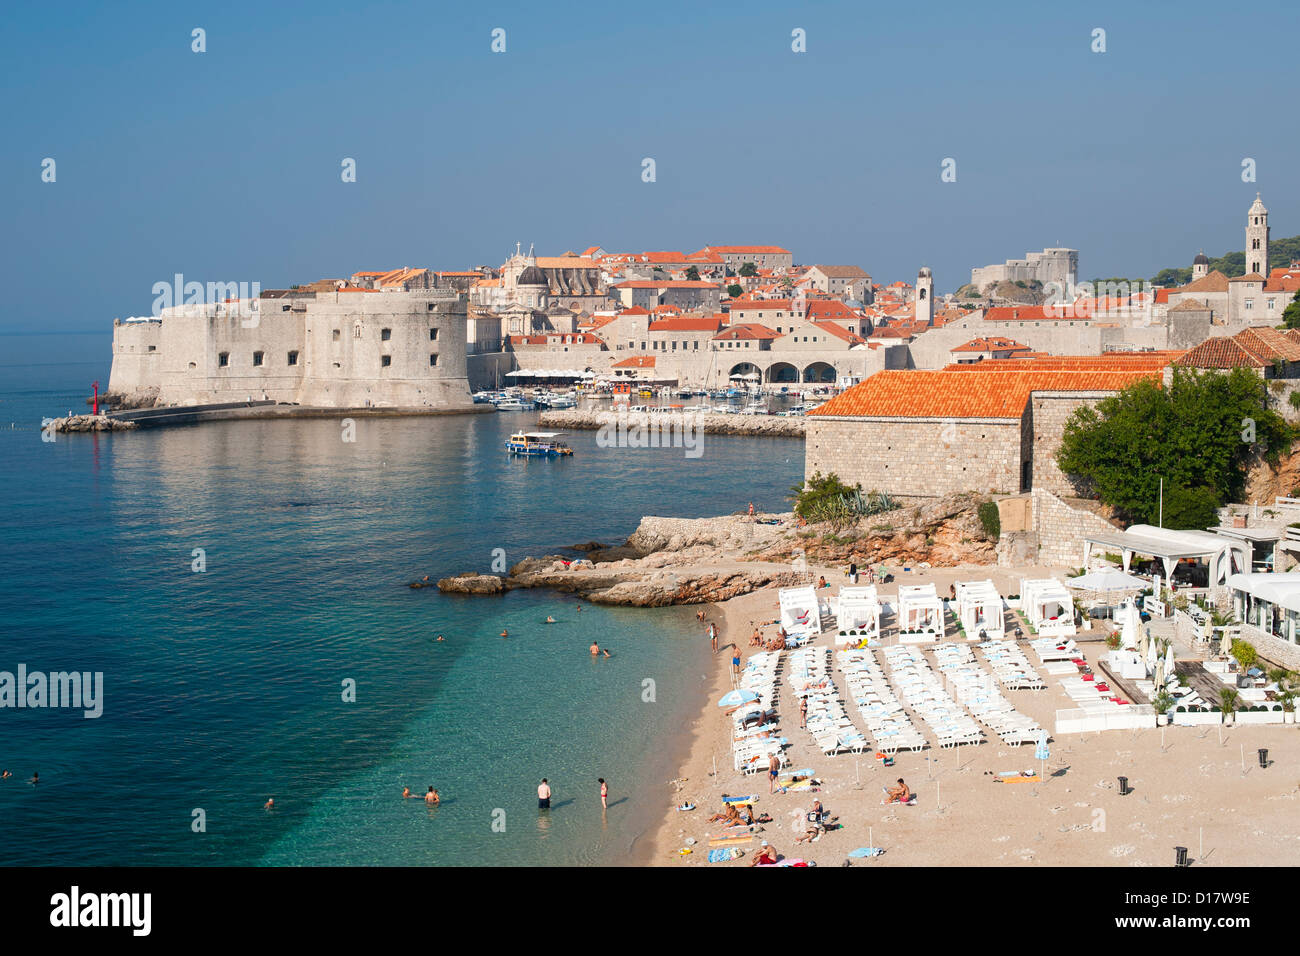 La plage de Banje et la vieille ville et du port de Dubrovnik, sur la côte Adriatique de Croatie. Banque D'Images